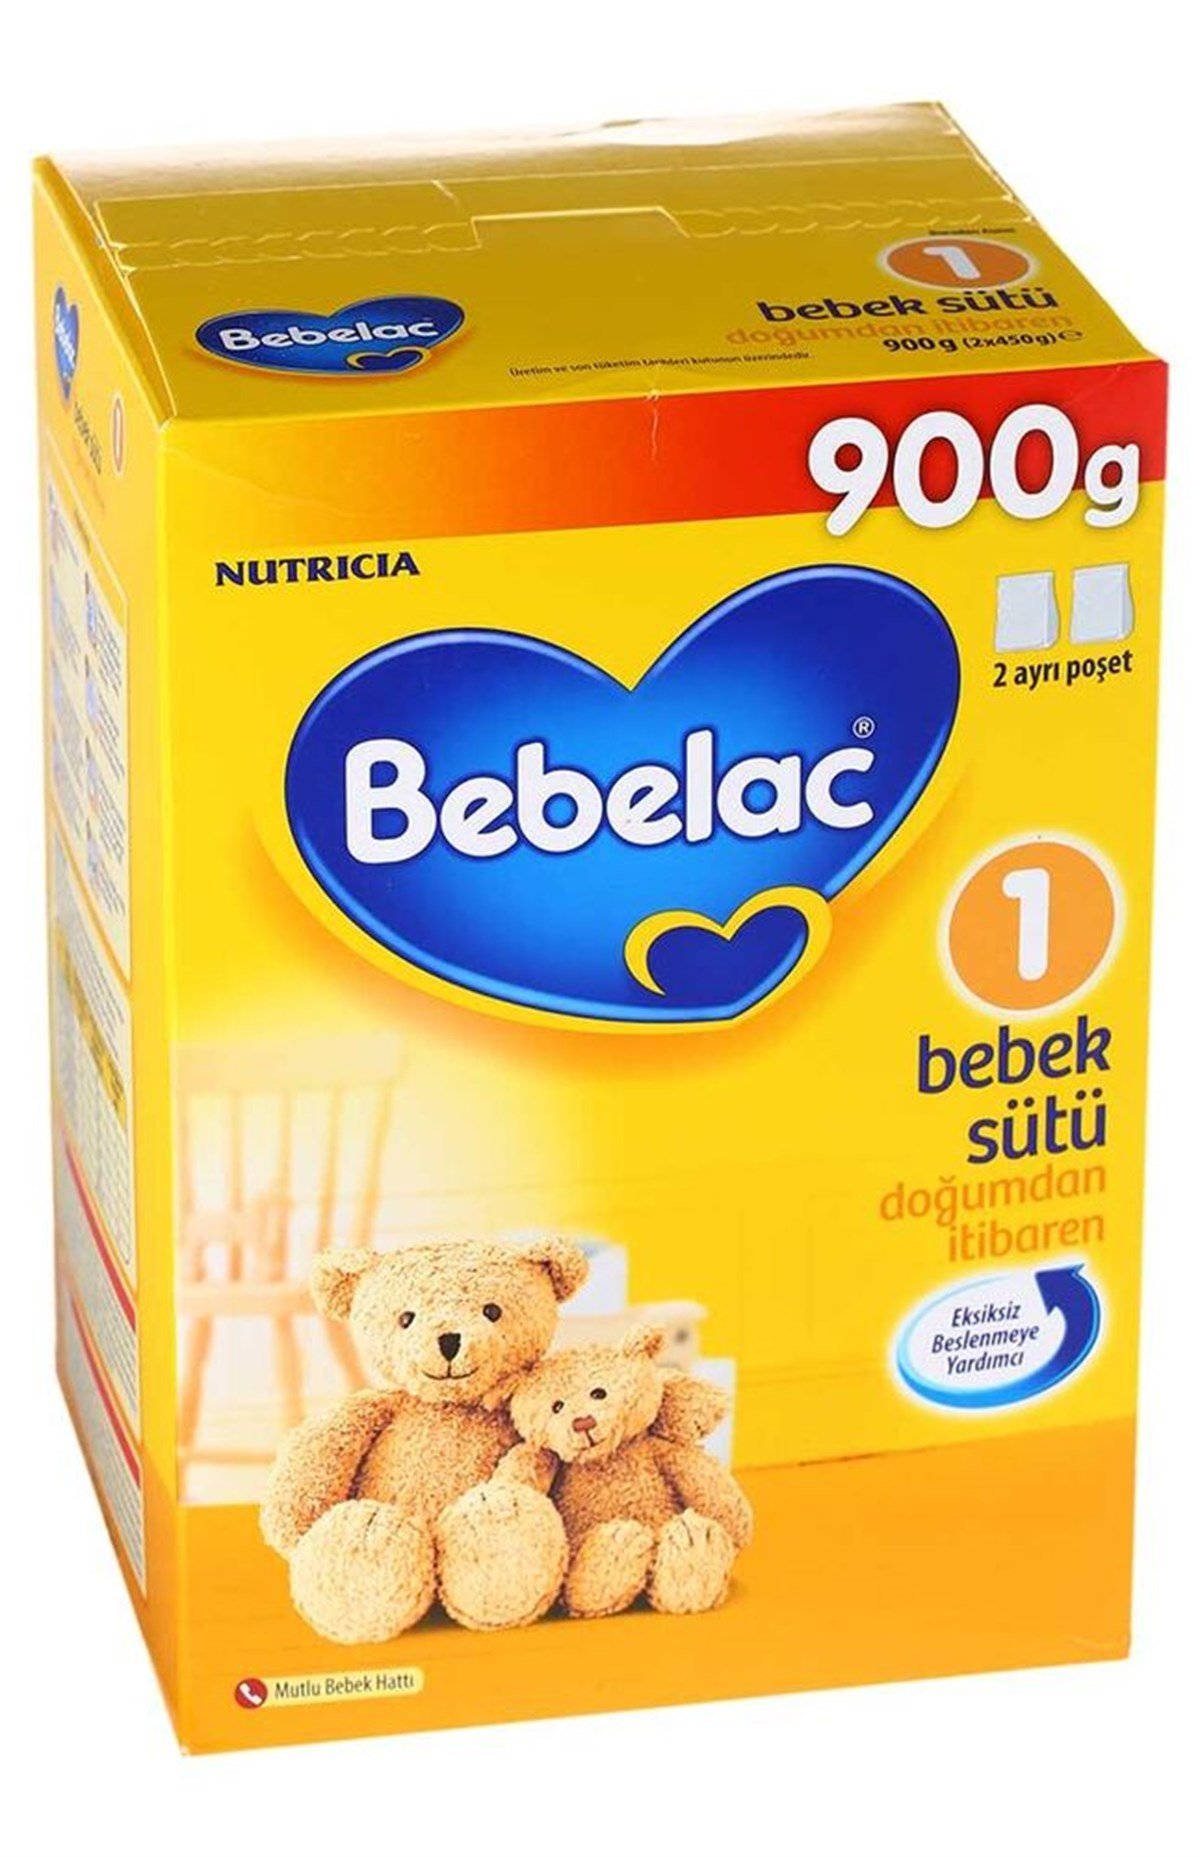 Bebelac 1 Bebek Sütü 900gr Fiyatları | Dermosiparis.com